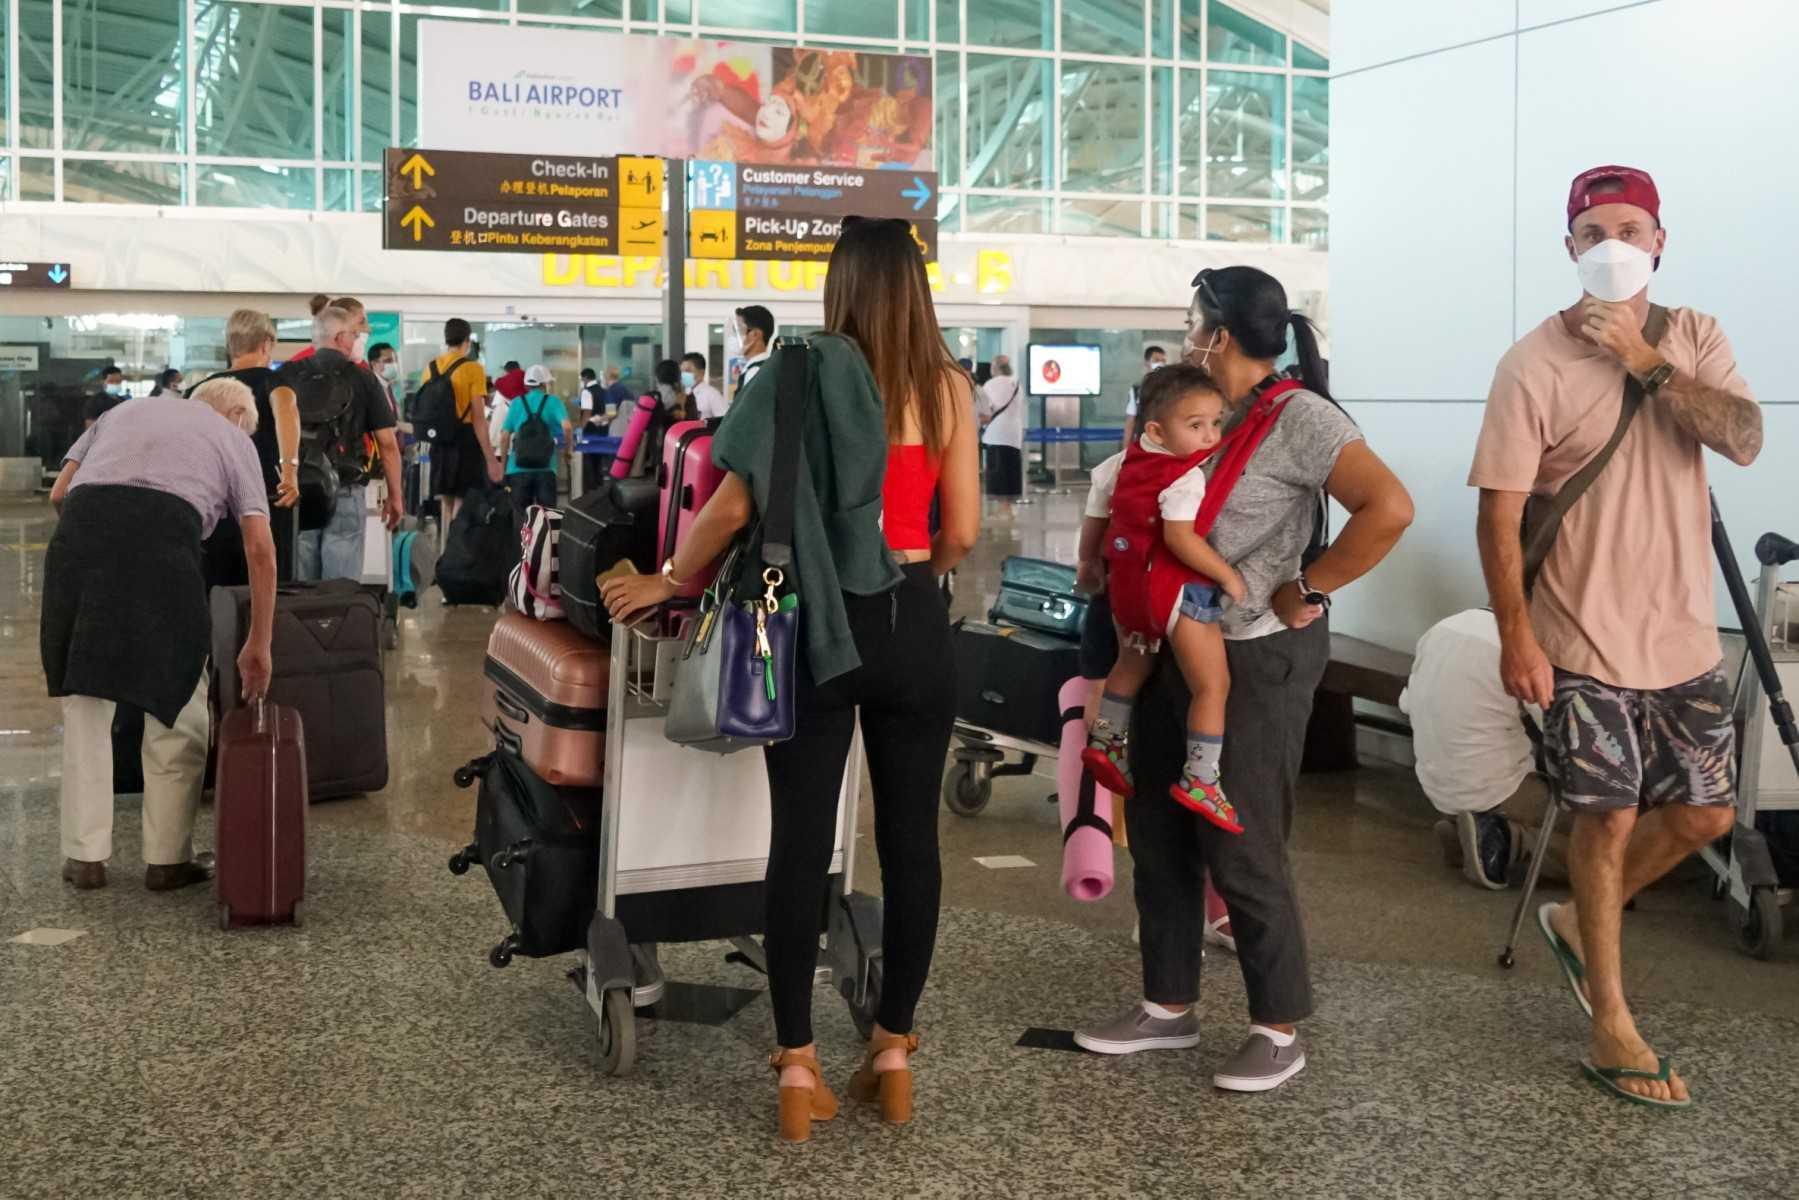 Pelancong beratur di lapangan terbang Bali. Pulau peranginan terkenal Indonesia itu menerima hampir 9,000 pelancong setiap hari. Gambar: AFP